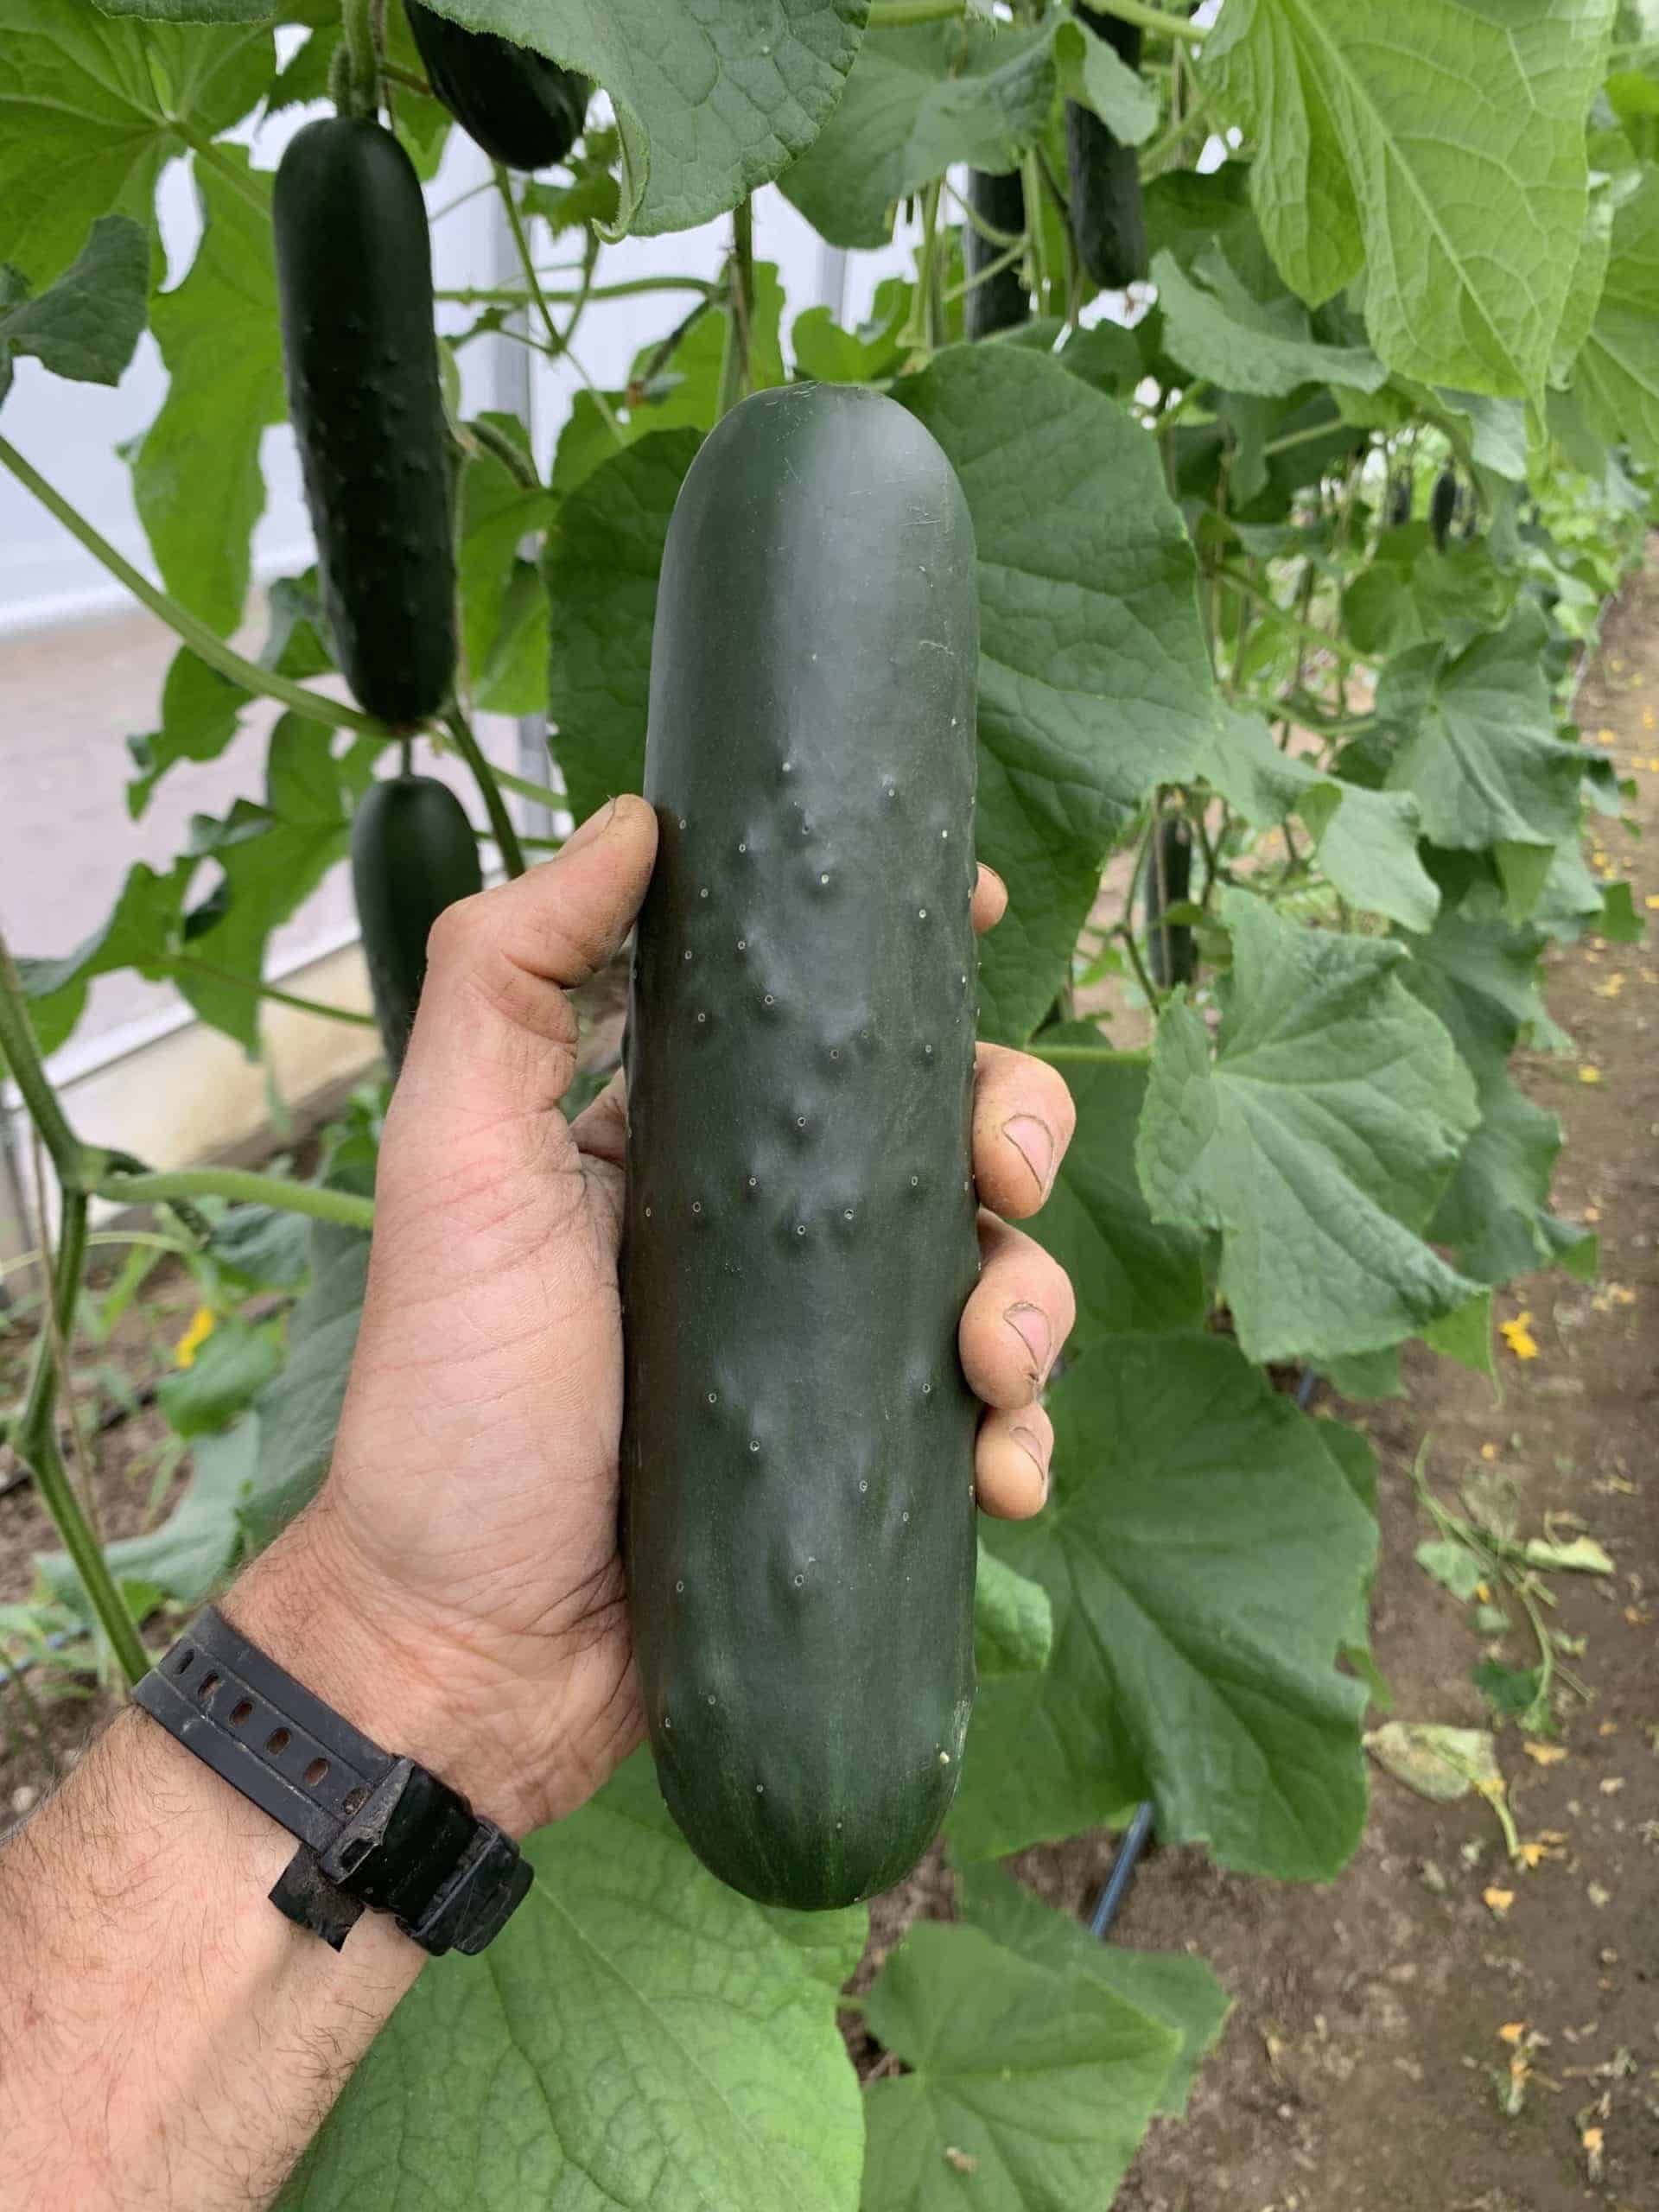 Field cucumber